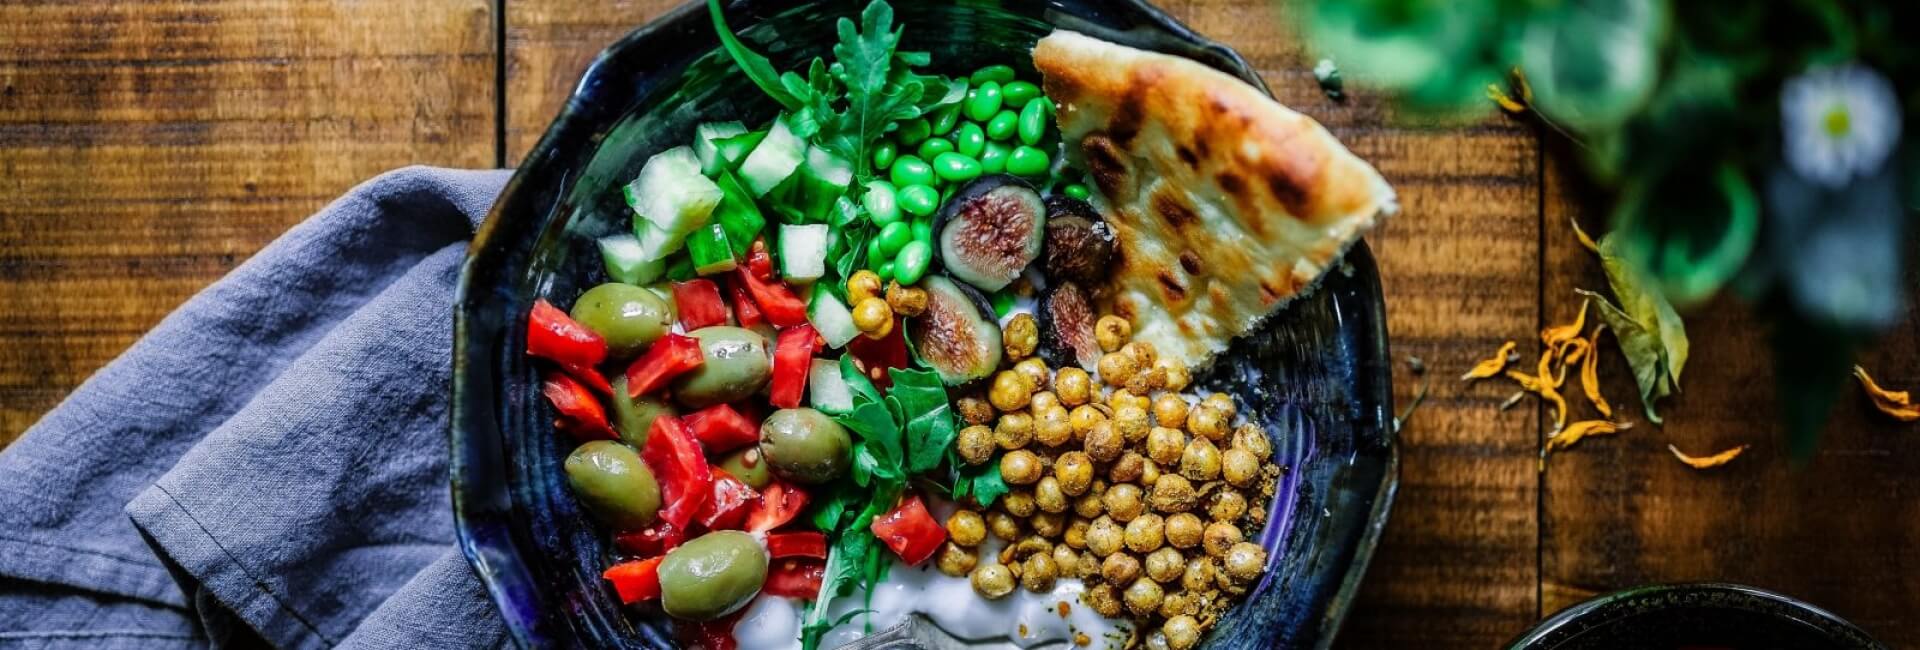 Dieta Mediterrânica, um estilo de vida saudável